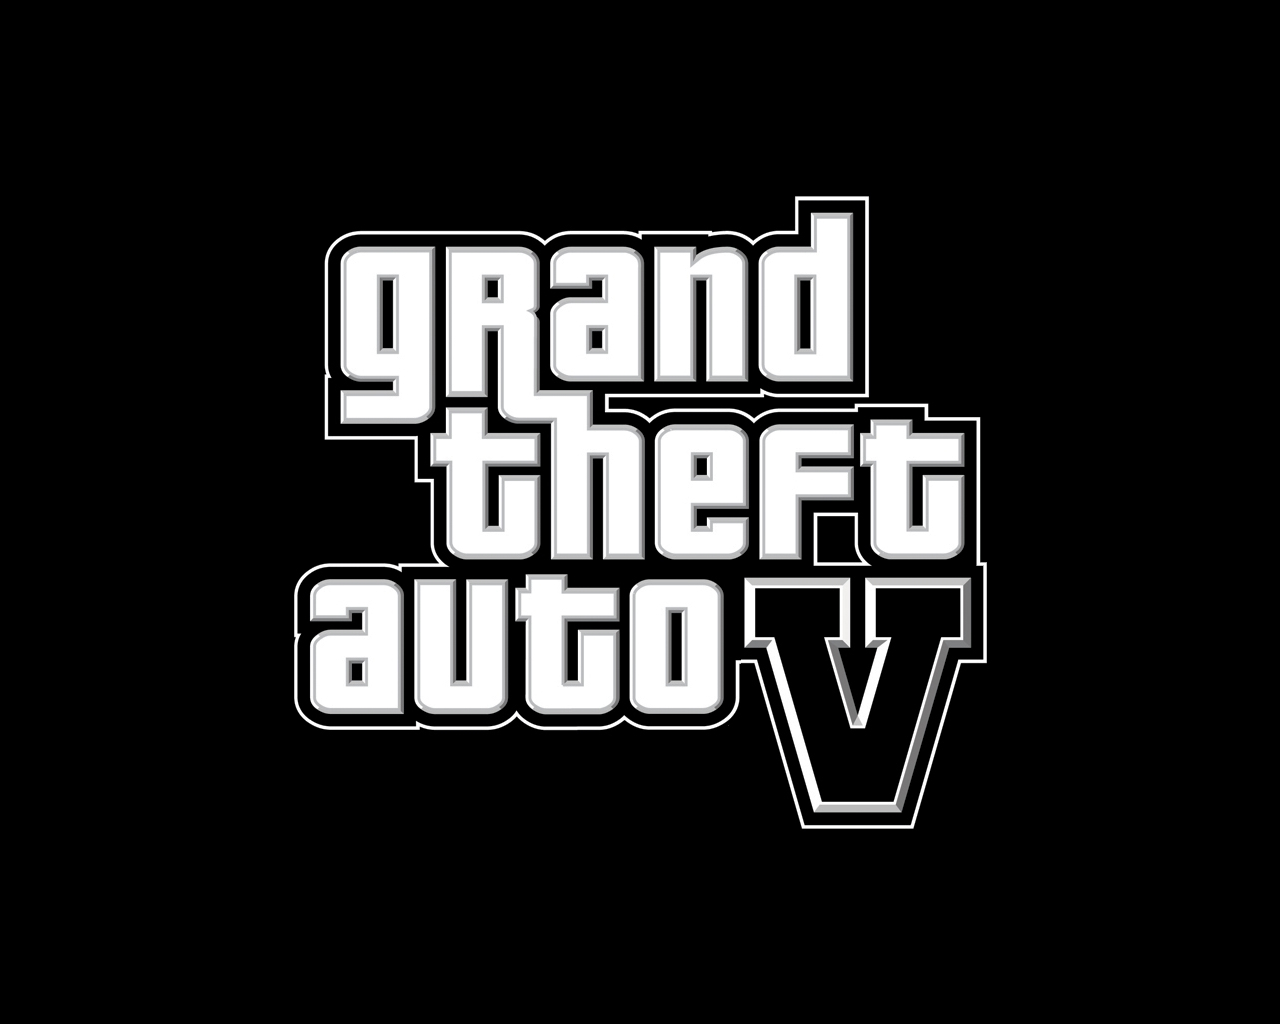 Grand Theft Auto V - Rockstar - PS4 - JF GAMES